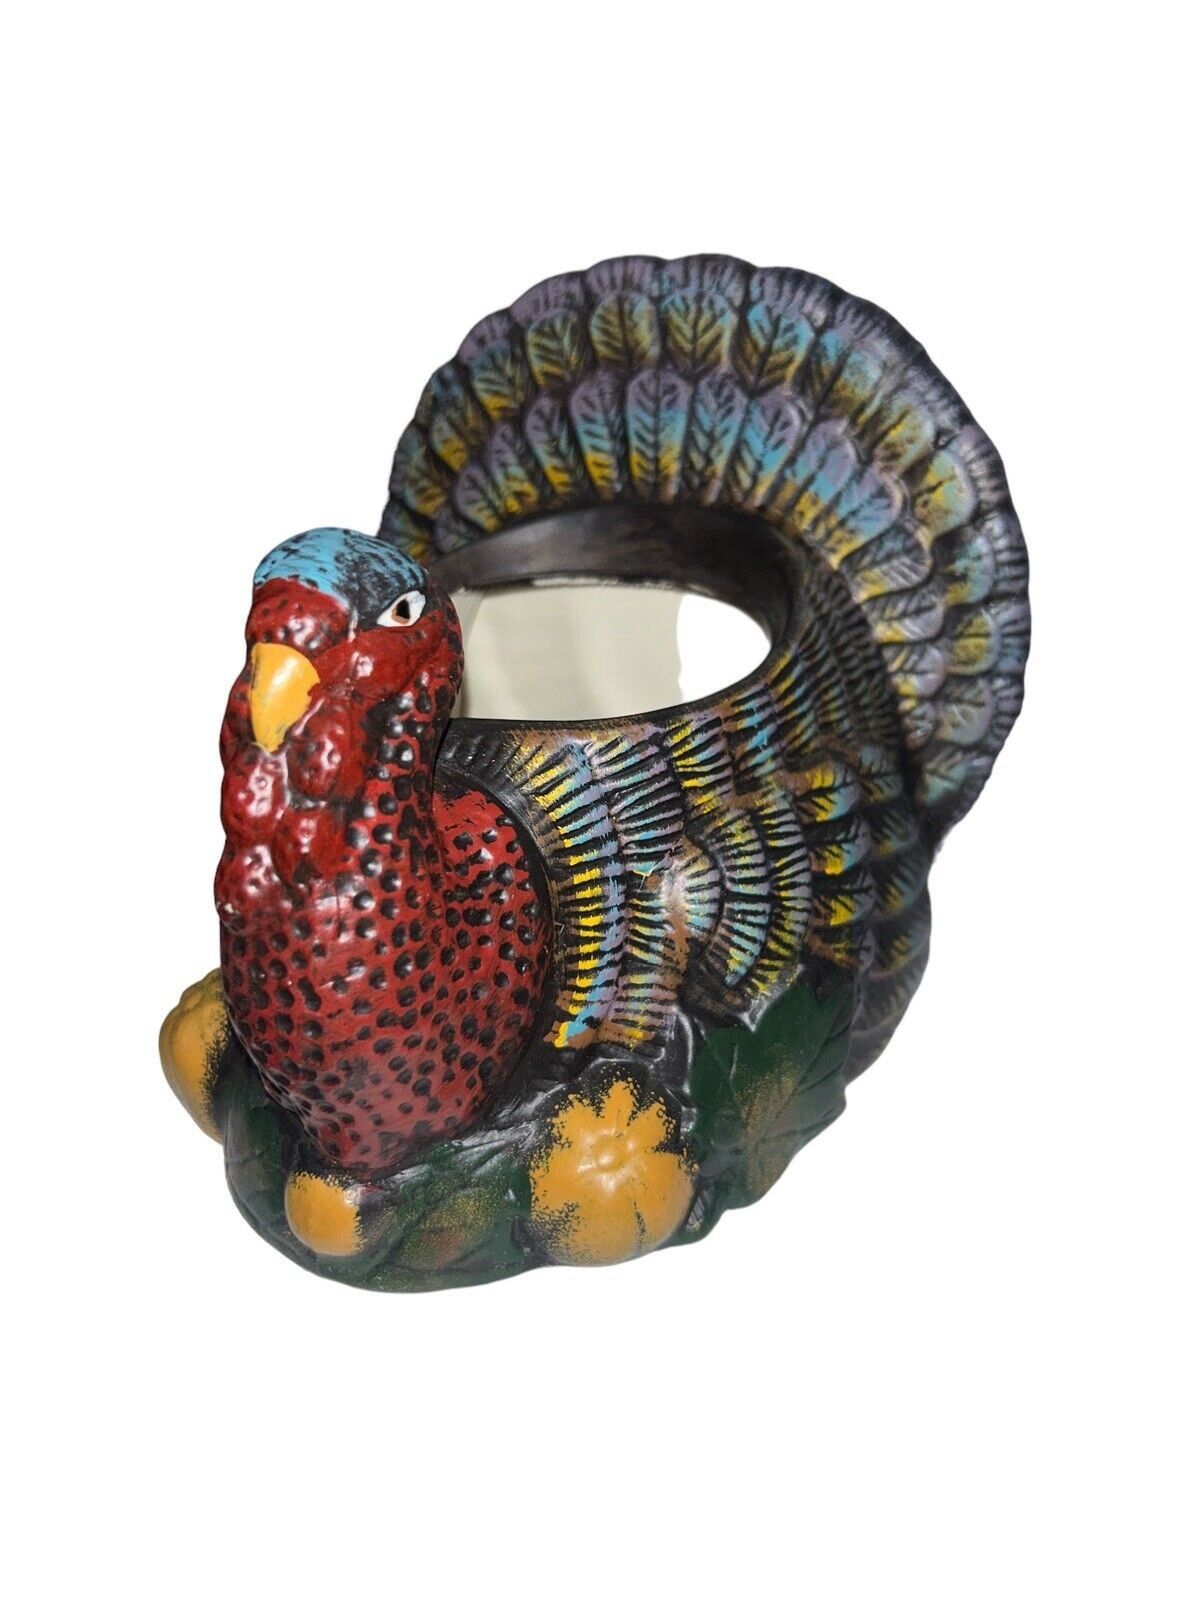 Vintage Hand Painted Unique Colorful Ceramic Turkey Planter